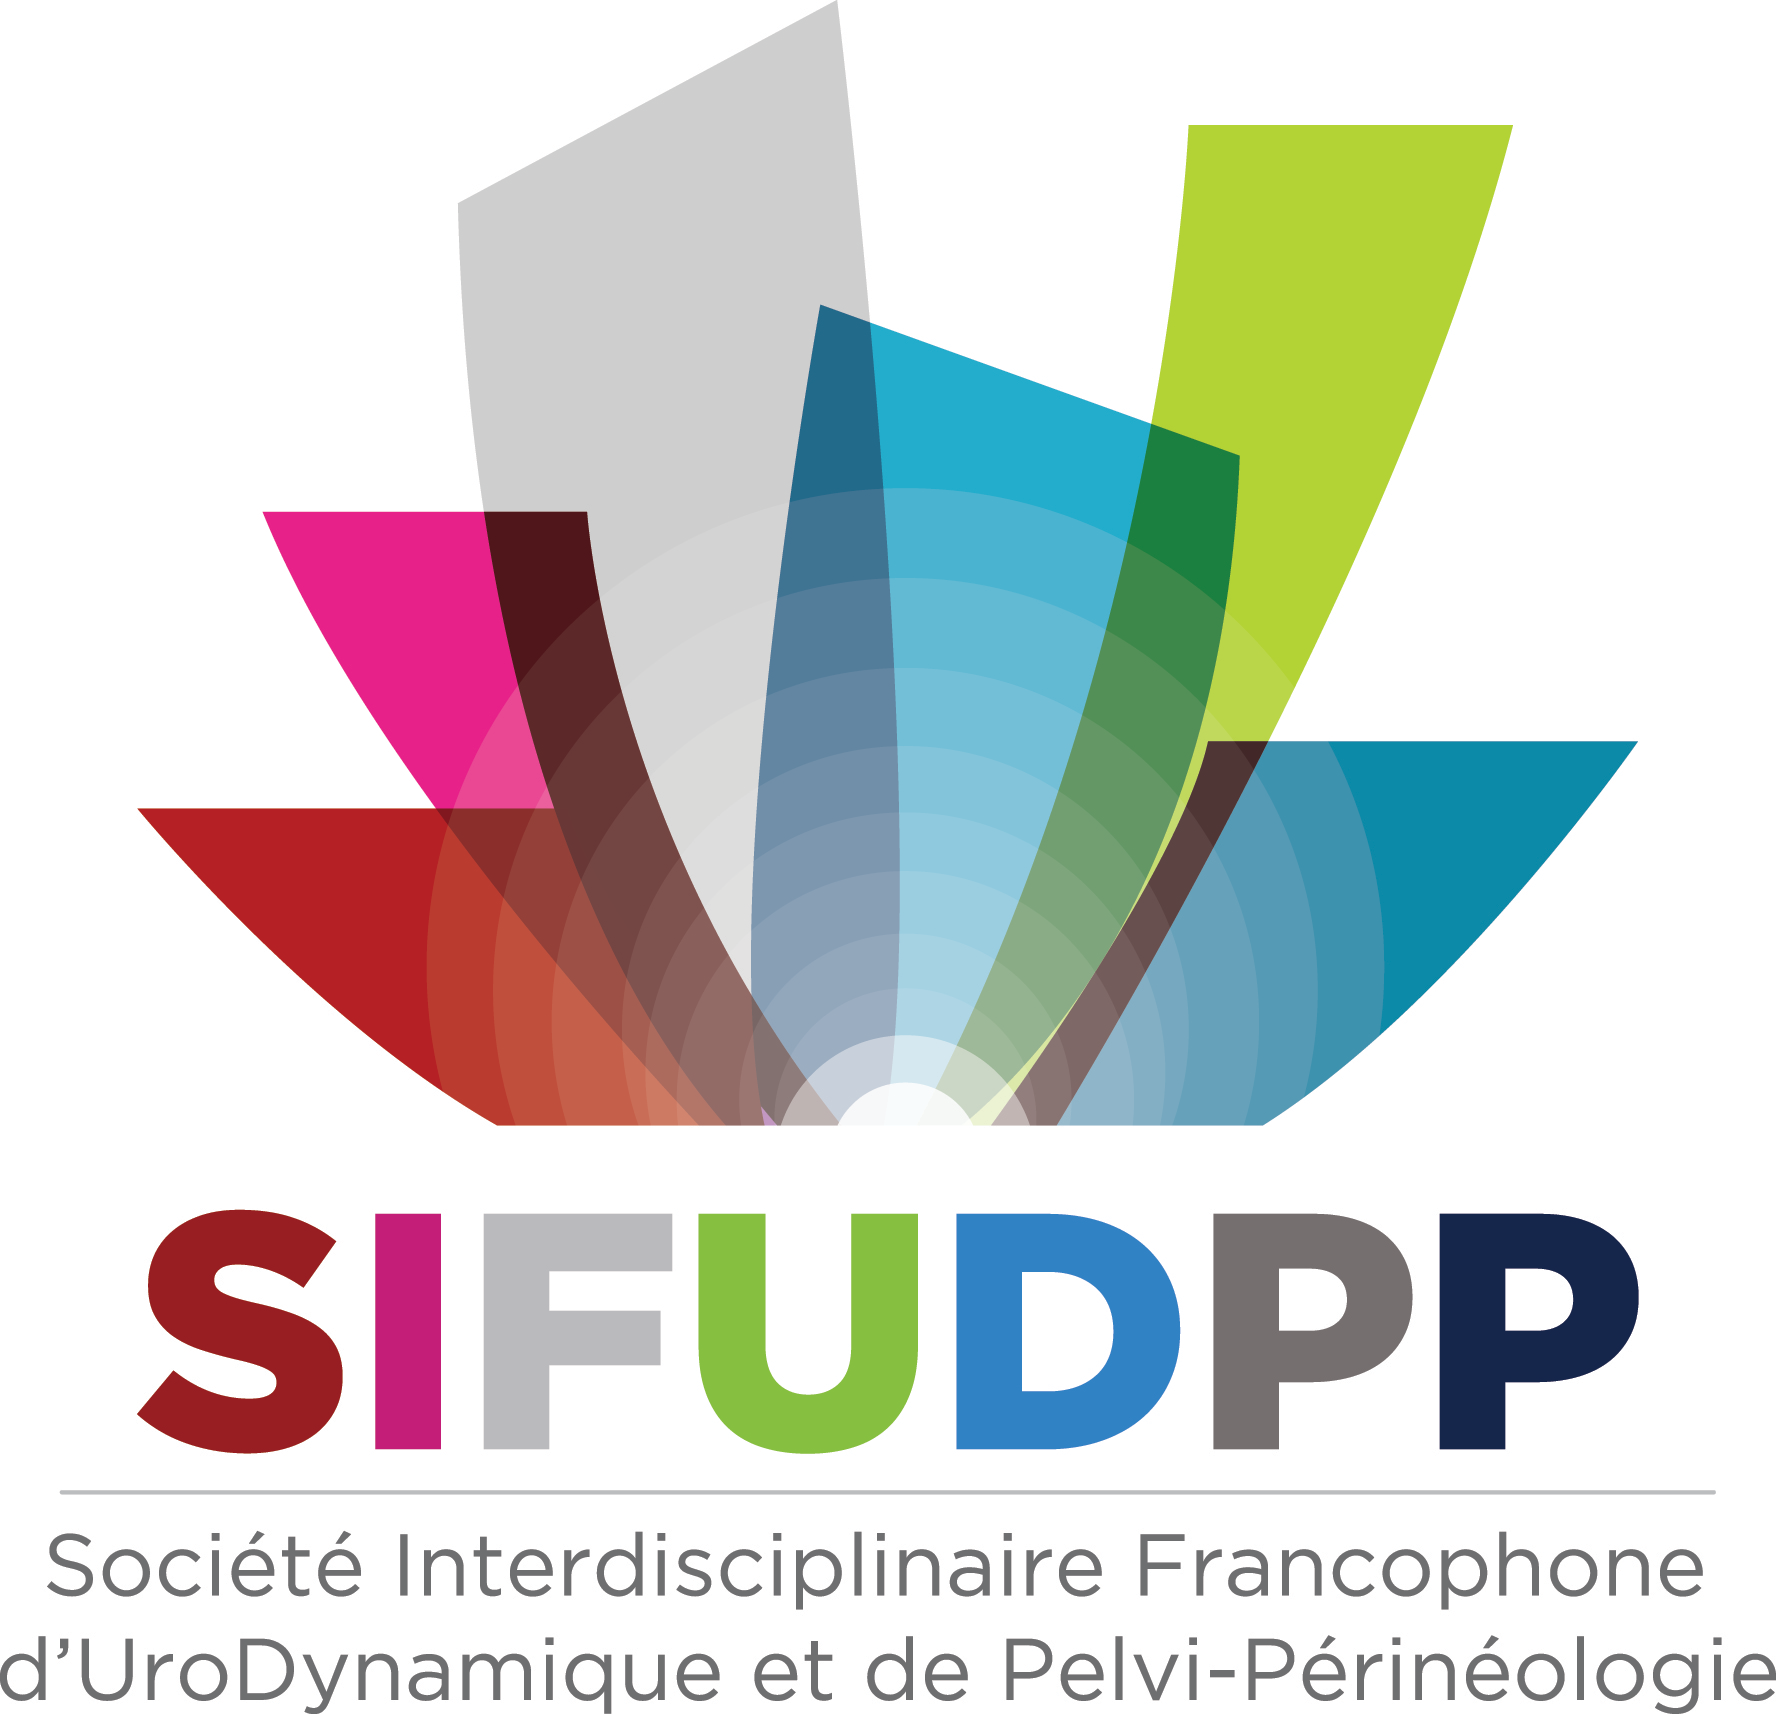 SIFUD-PP La Baule 2015 : ATELIER 8 - Promontofixation coelio : trucs et astuces